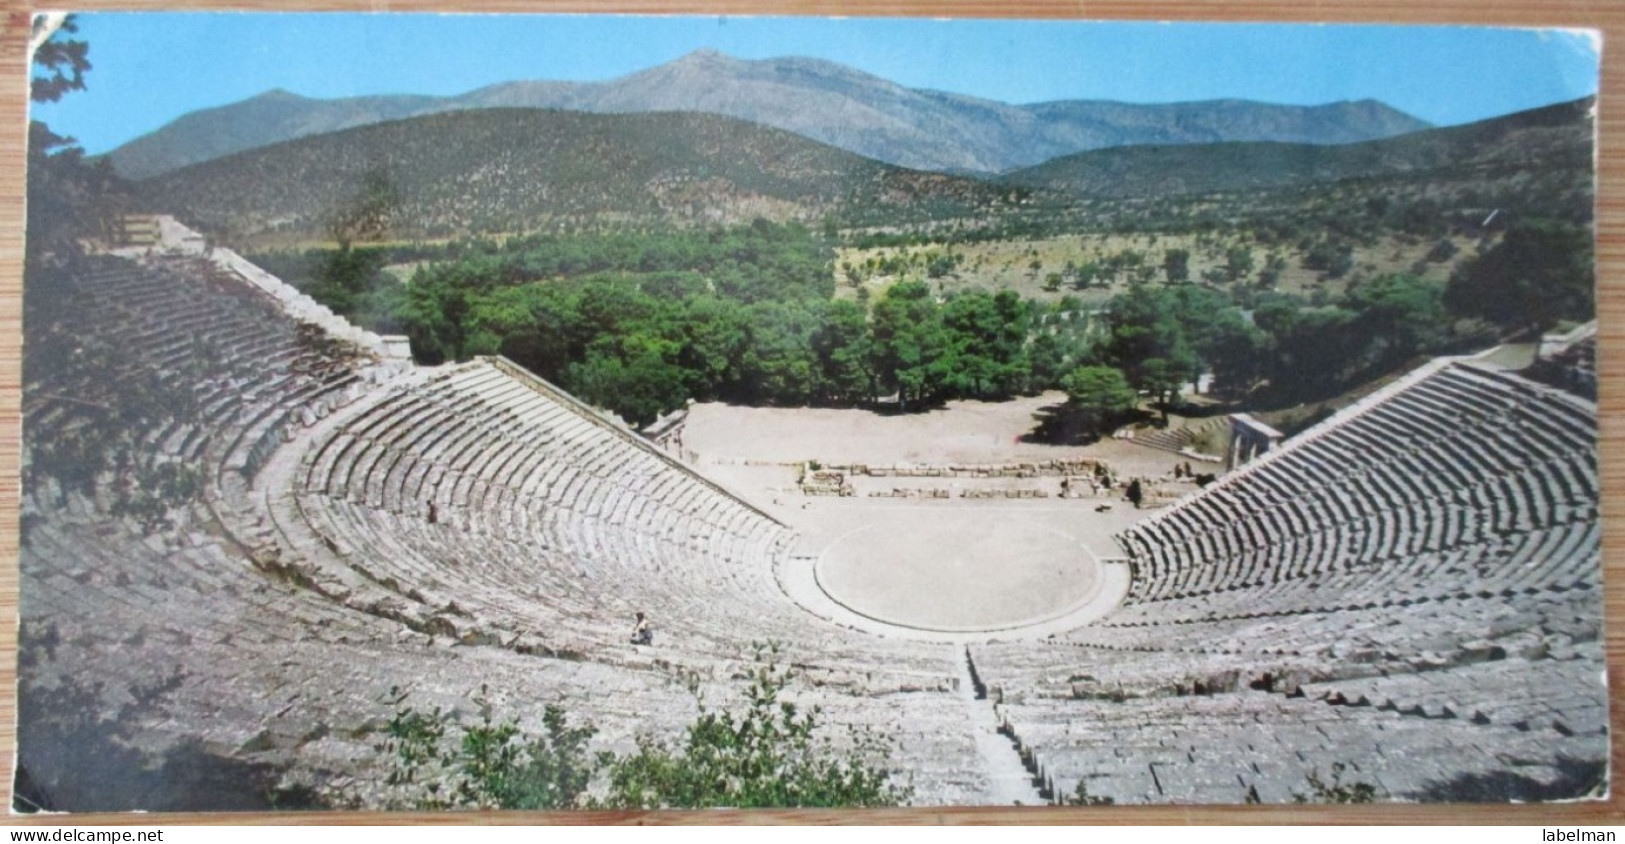 GREECE EPIDAREUS THEATER AMPHI POSTCARD ANSICHTSKARTE PICTURE CARTOLINA CARTE POSTALE POSTKARTE KARTE  CARD - Grèce